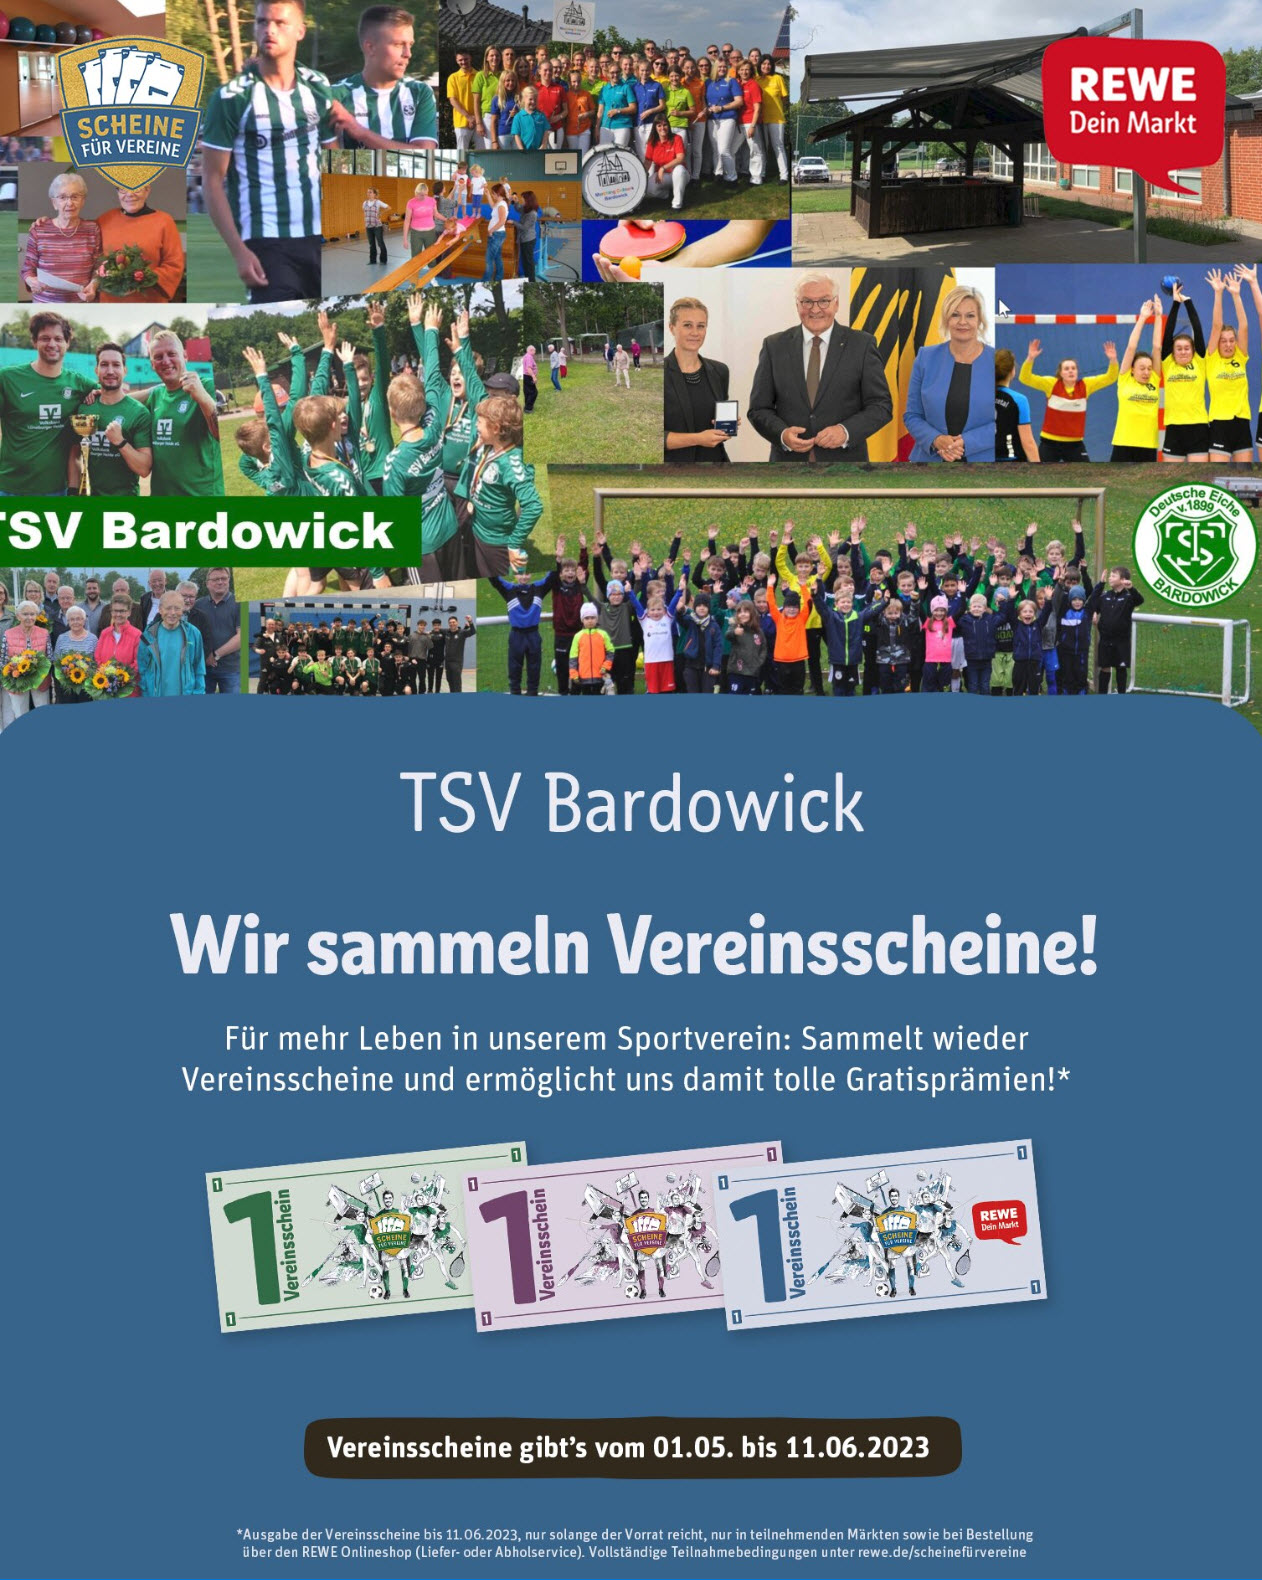 TSVBardowick REWE Scheine fuer Vereine Poster Story